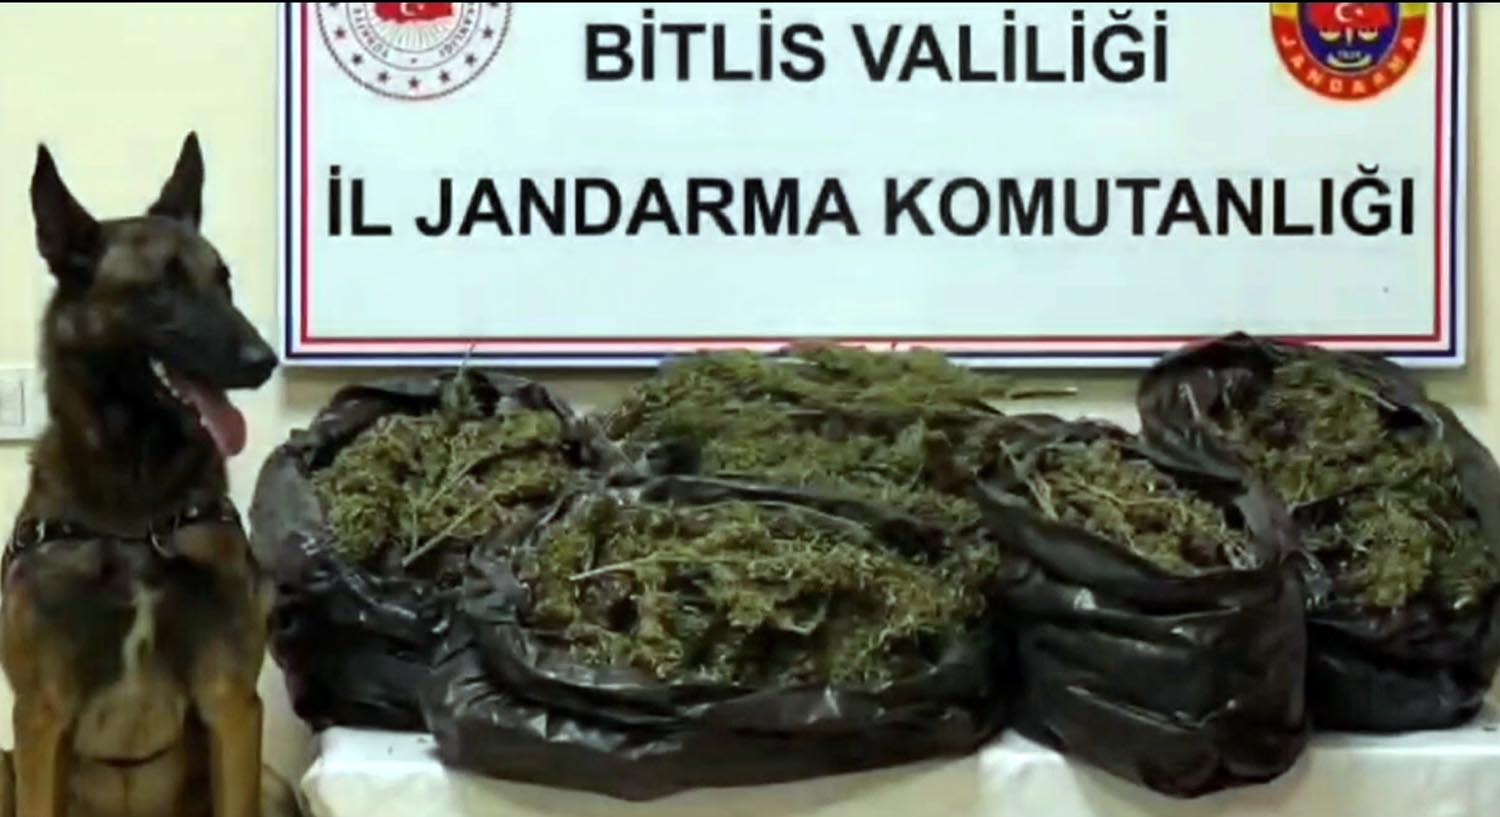 Bitlis’te 10 kilo 200 gram ağırlığında skunk maddesi ele geçirildi.